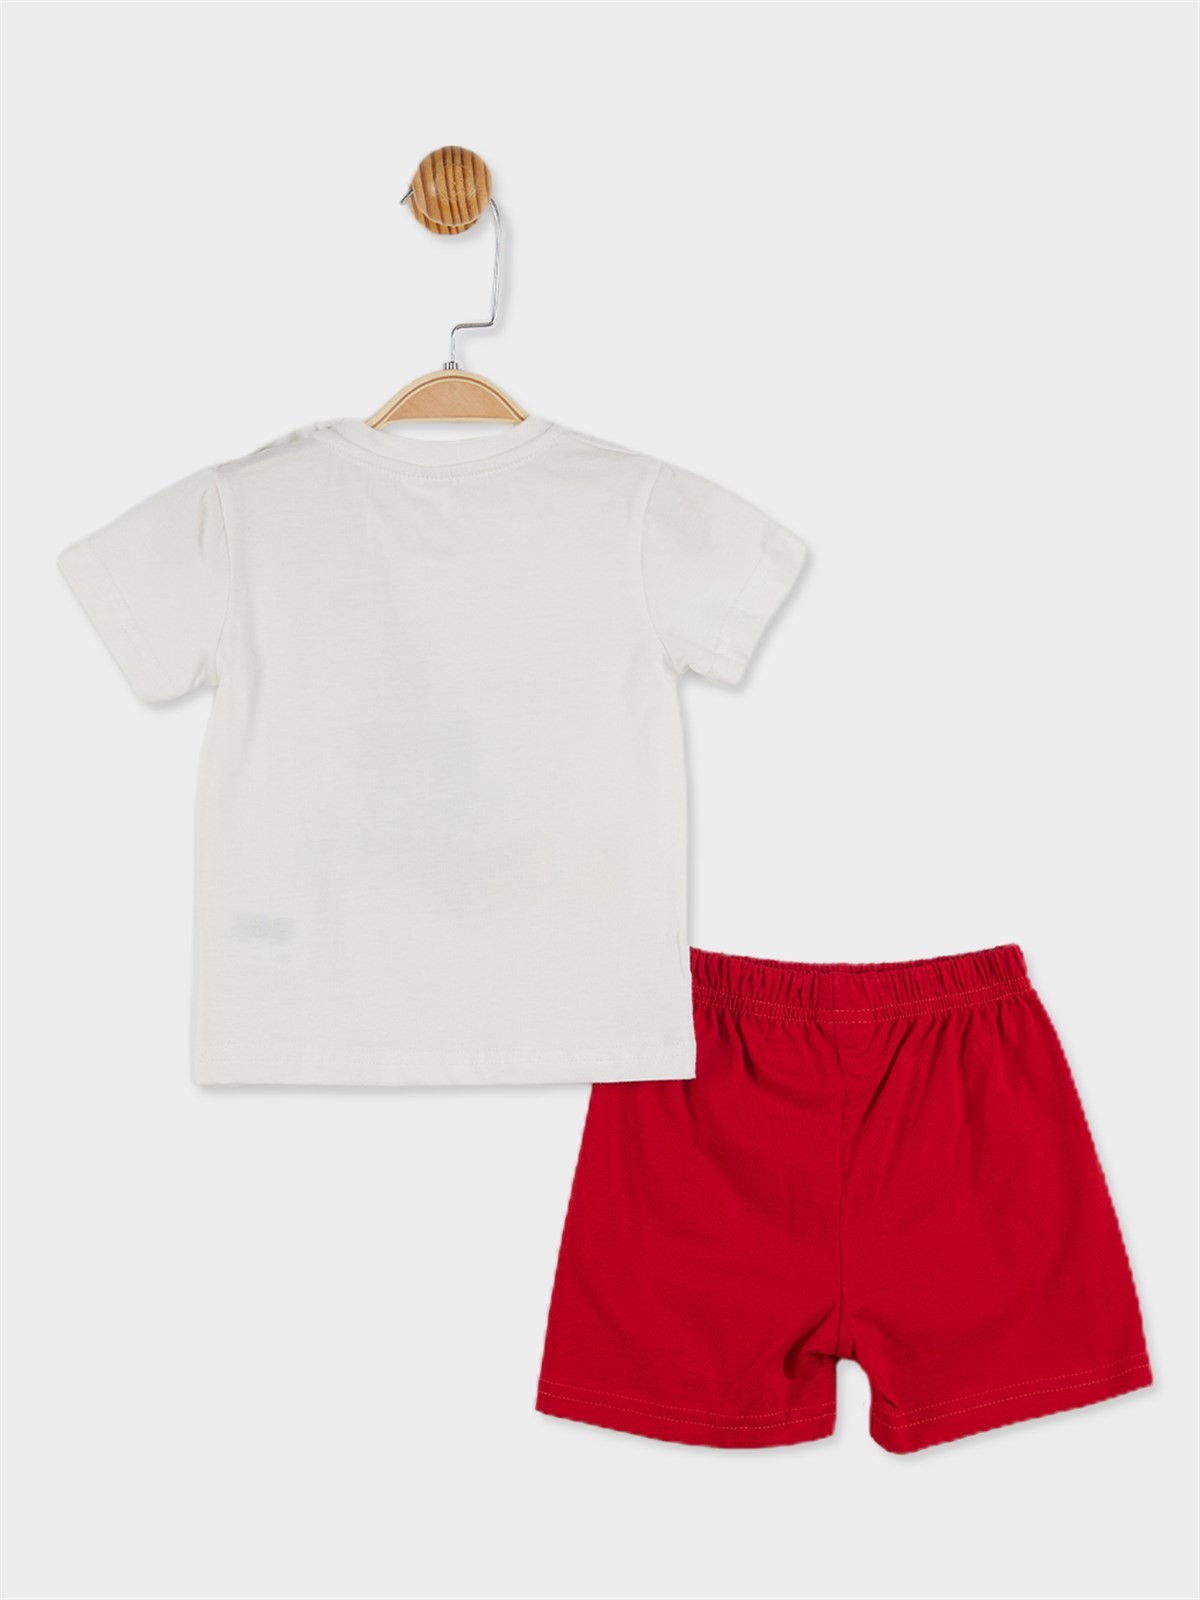 Disney Mickey Mouse Lisanslı Erkek Bebek Tişört ve Şortlu Pijama Takımı 20843